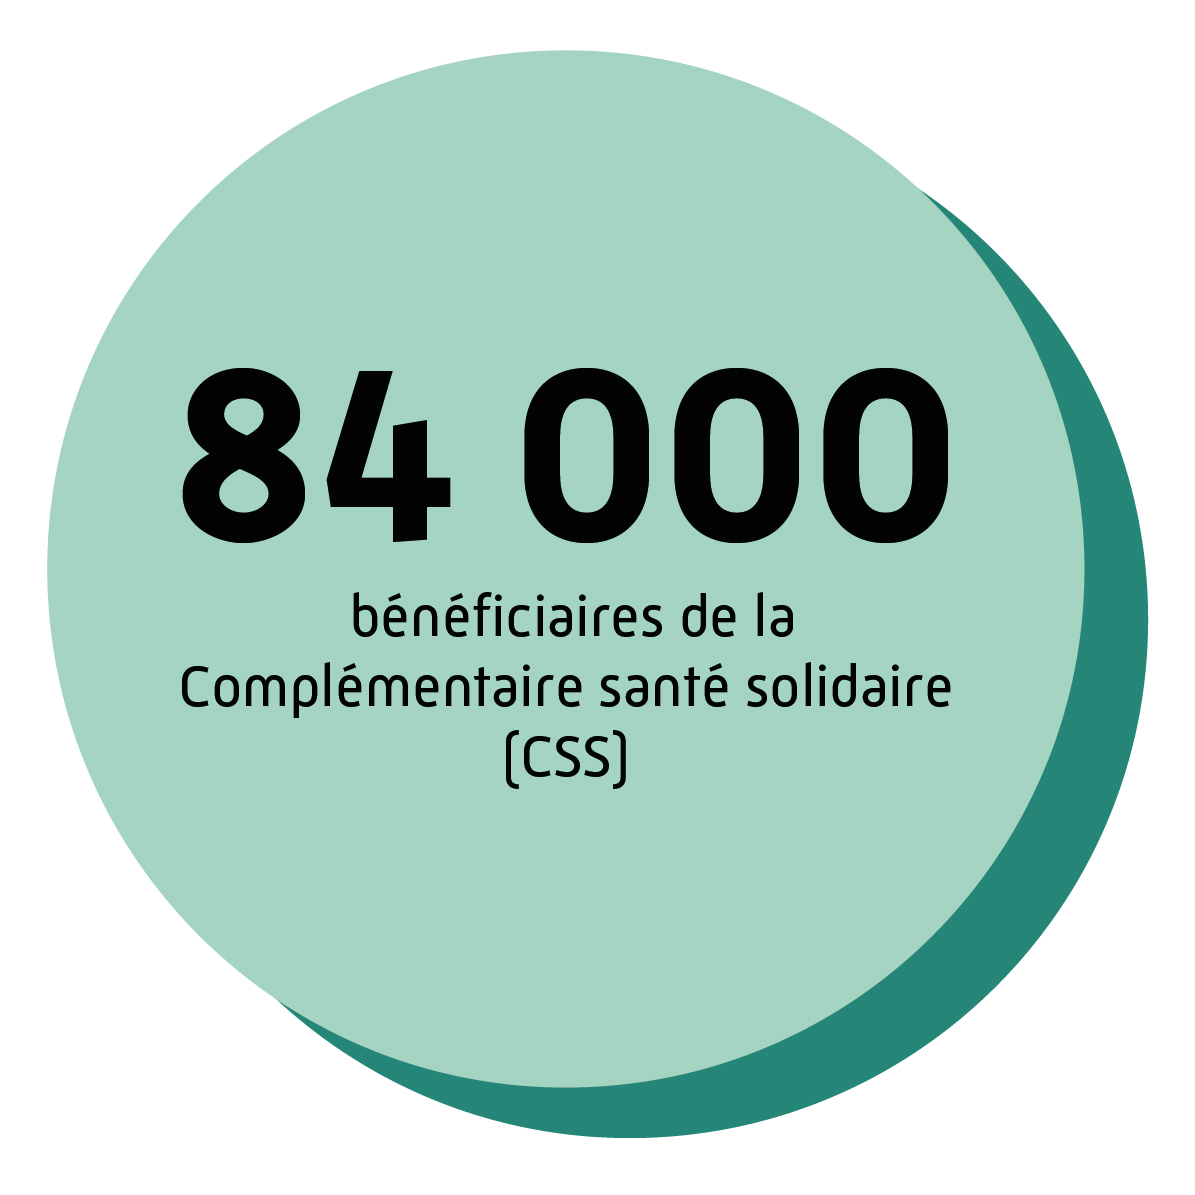 Près de 84 000 bénéficiaires de la Complémentaire santé solidaire (CSS).